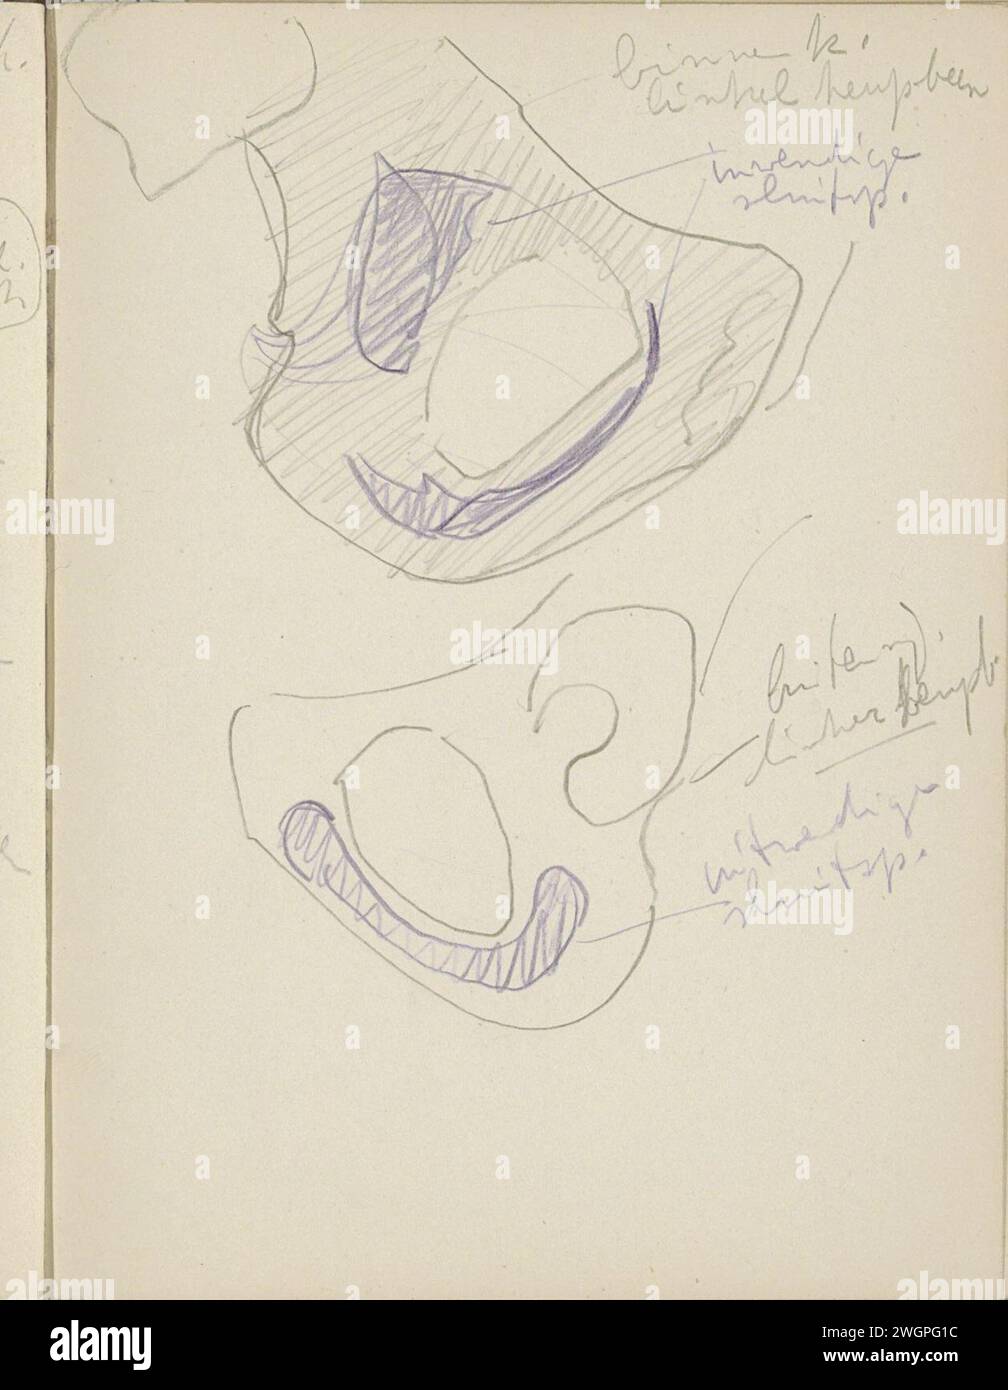 Innerhalb und außerhalb eines Hüftknochens, 1906 - 1945 Seite 62 Recto aus einem Skizzenbuch mit 69 Blättern. Papier. Bleistiftskelett Stockfoto